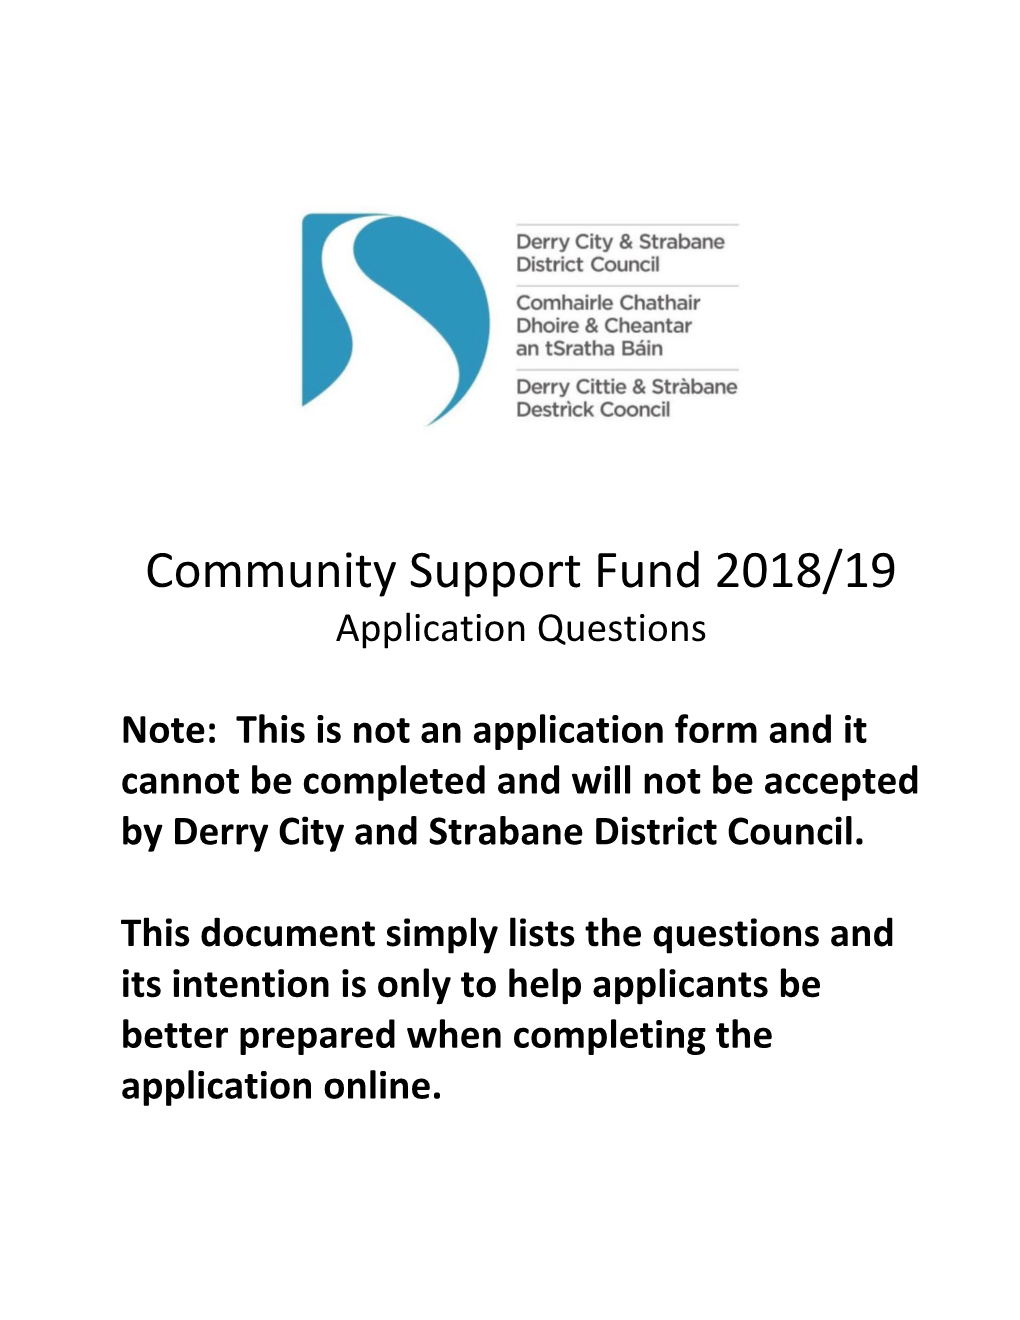 Communitysupport Fund 2018/19